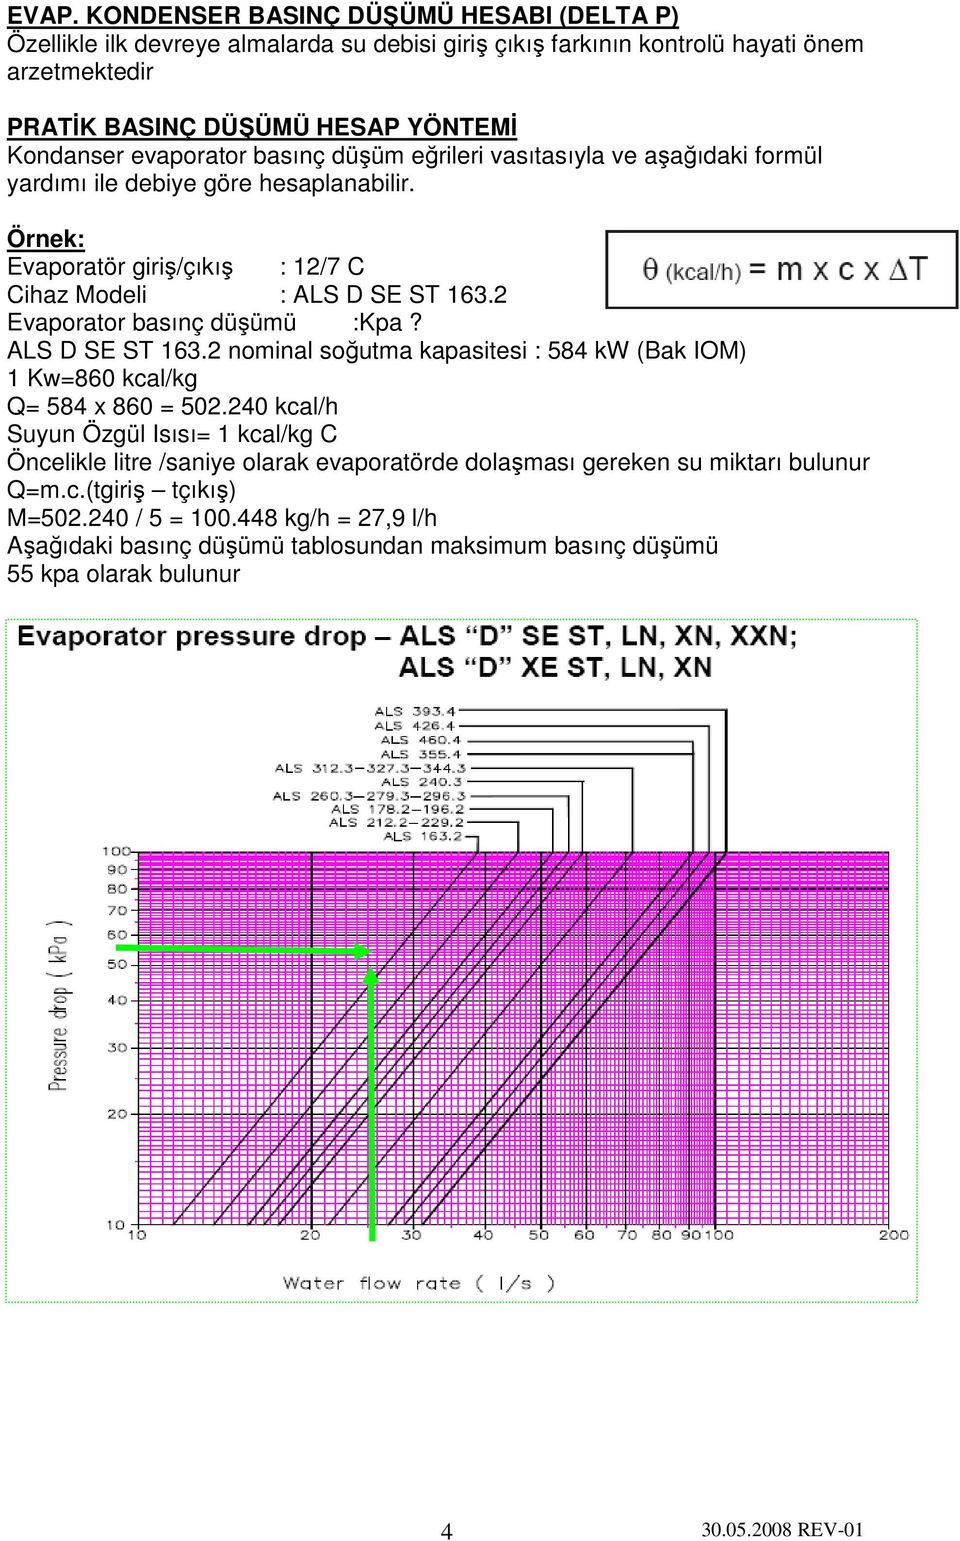 2 Evaporator basınç düşümü :Kpa? ALS D SE ST 163.2 nominal soğutma kapasitesi : 584 kw (Bak IOM) 1 Kw=860 kcal/kg Q= 584 x 860 = 502.